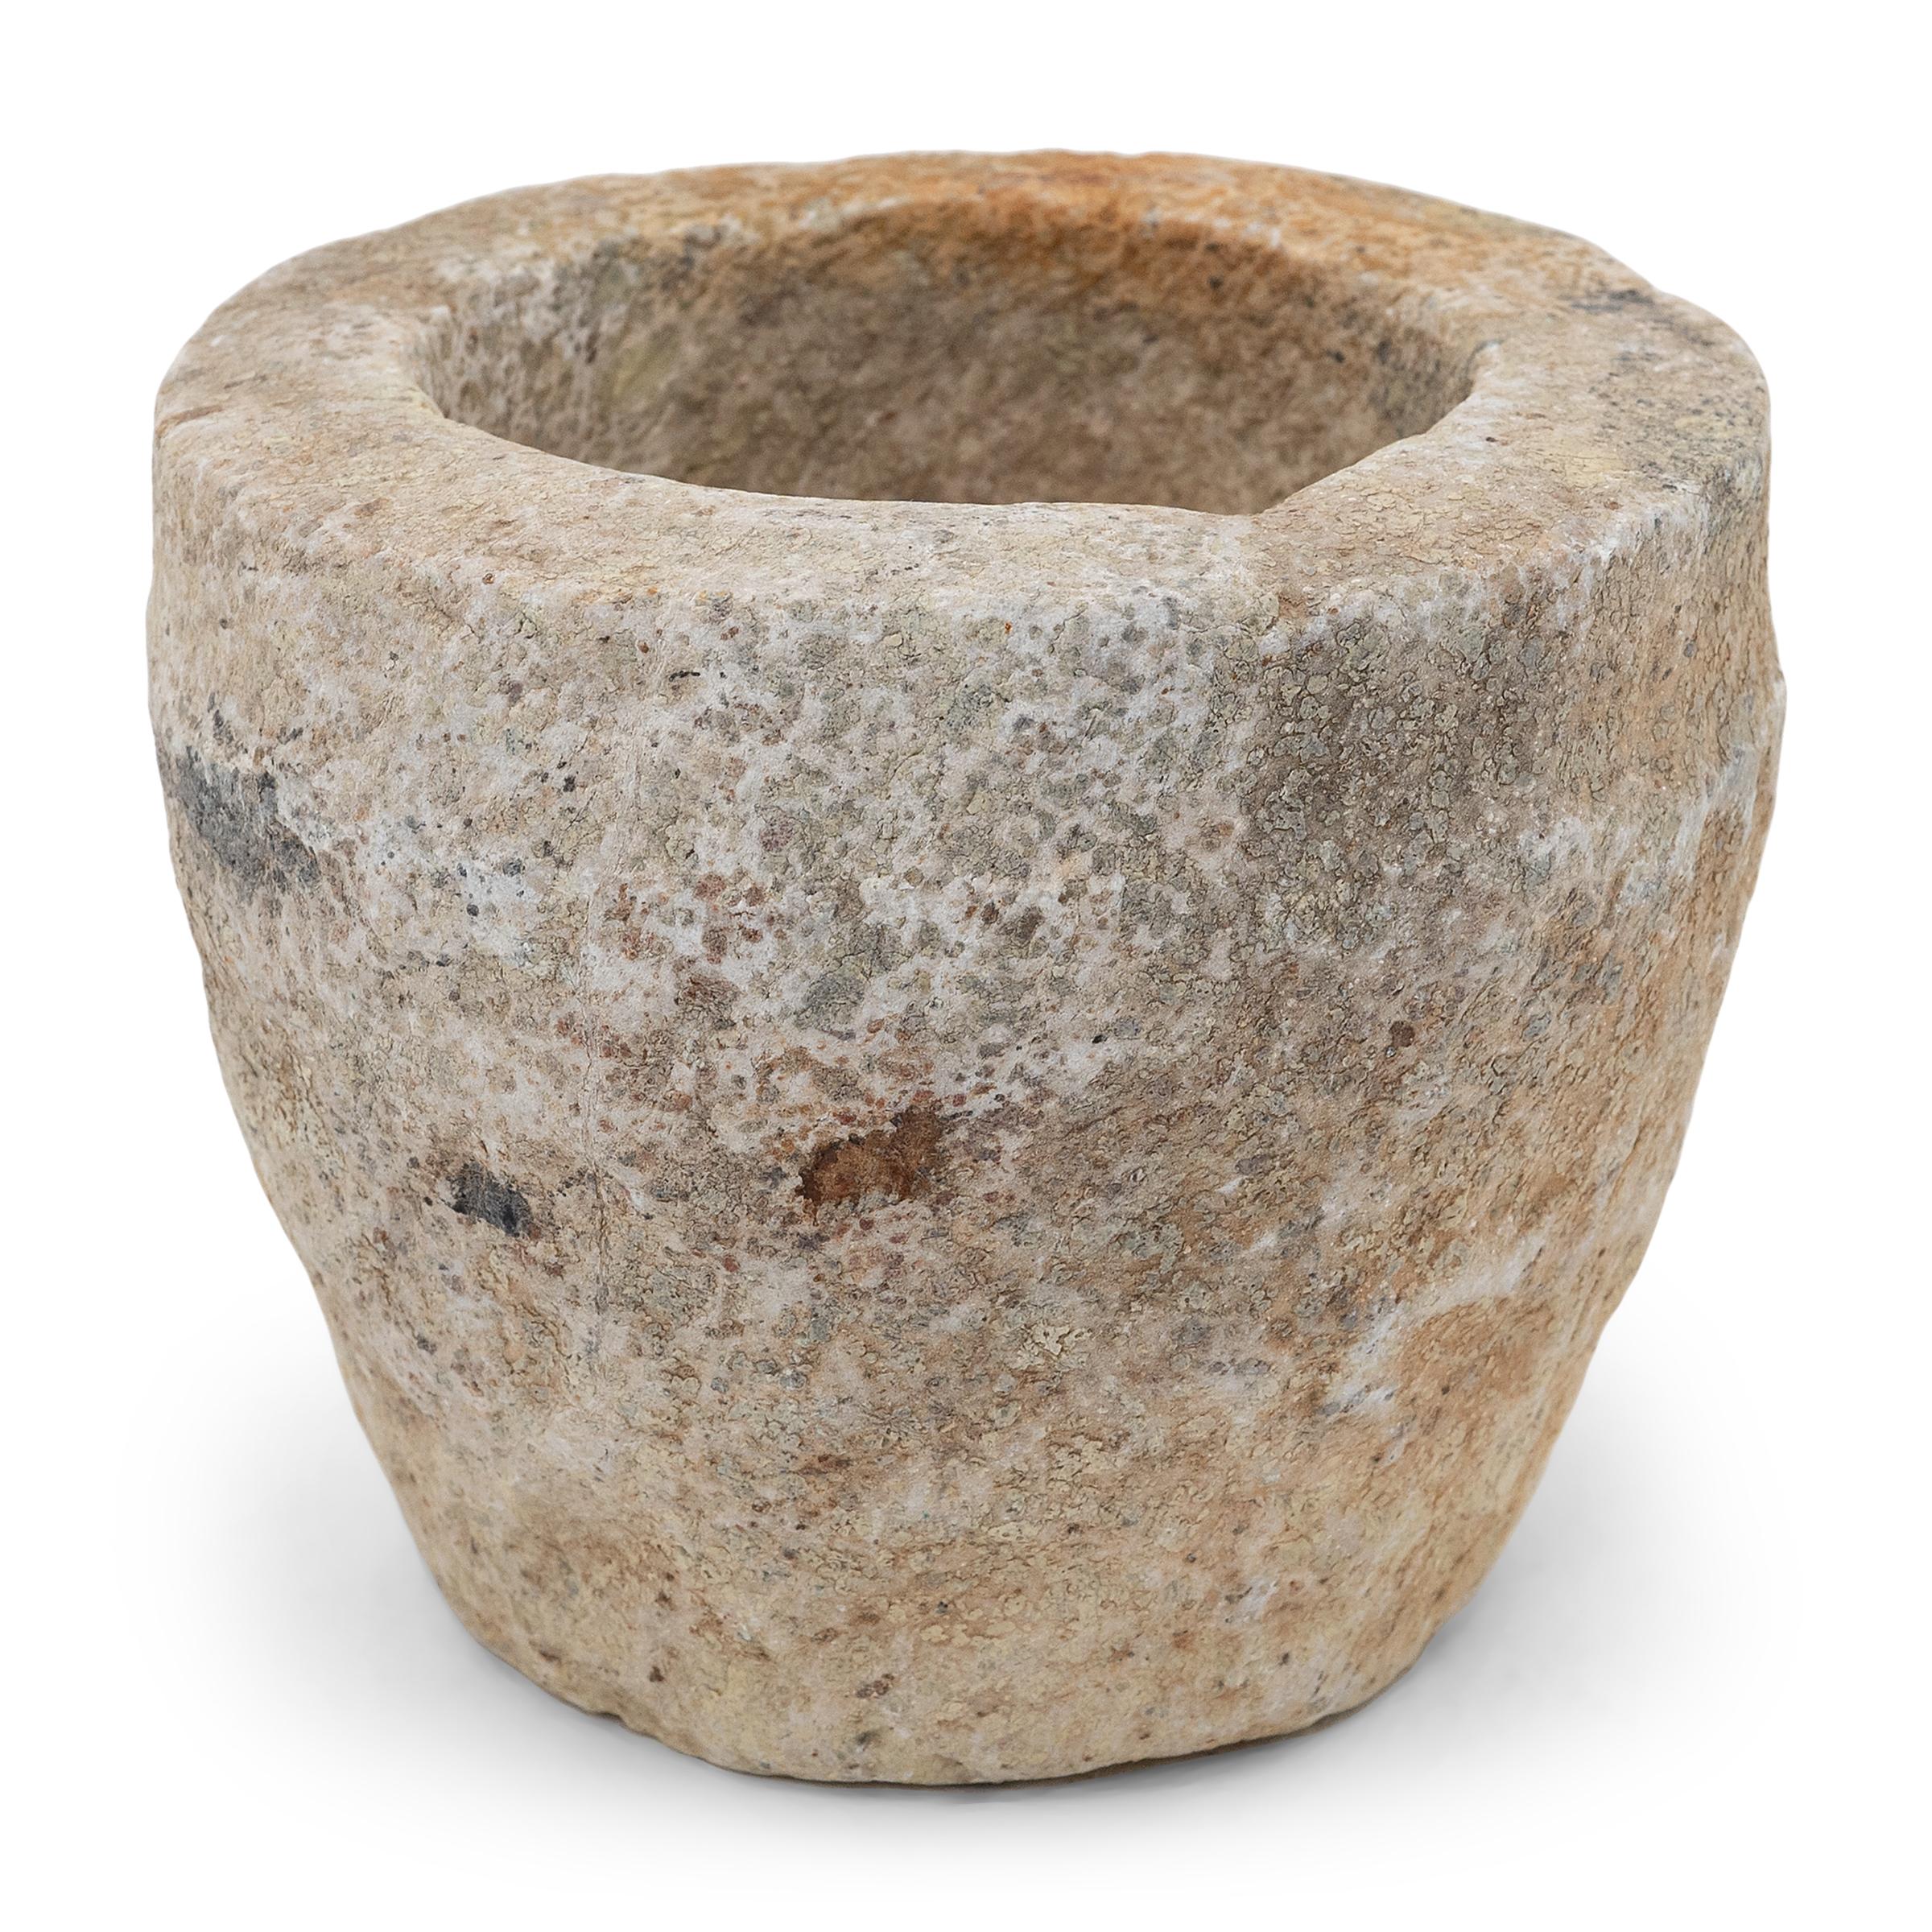 Dieses aus einem einzigen Kalksteinblock gehauene Steingefäß ist ein Mörser aus dem frühen 19. Jahrhundert, der einst zum Zermahlen von Gewürzen, Kräutern und anderen Würzmitteln verwendet wurde. Das von Hand gemeißelte, rustikale Äußere ist mit dem